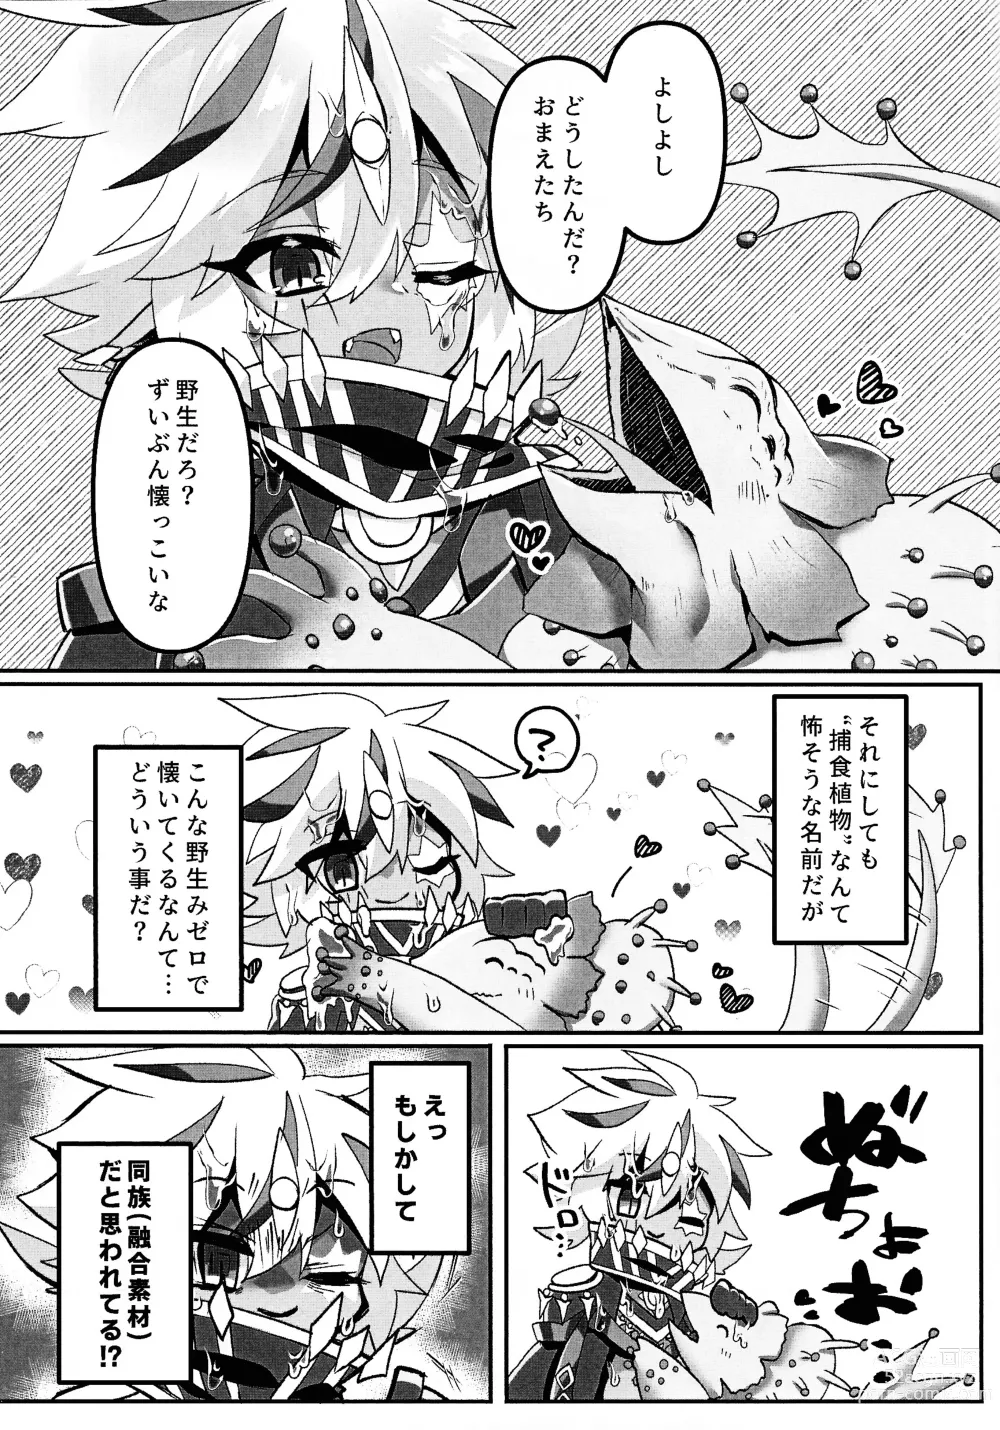 Page 4 of doujinshi Toru ● sozai wa o konomi de.